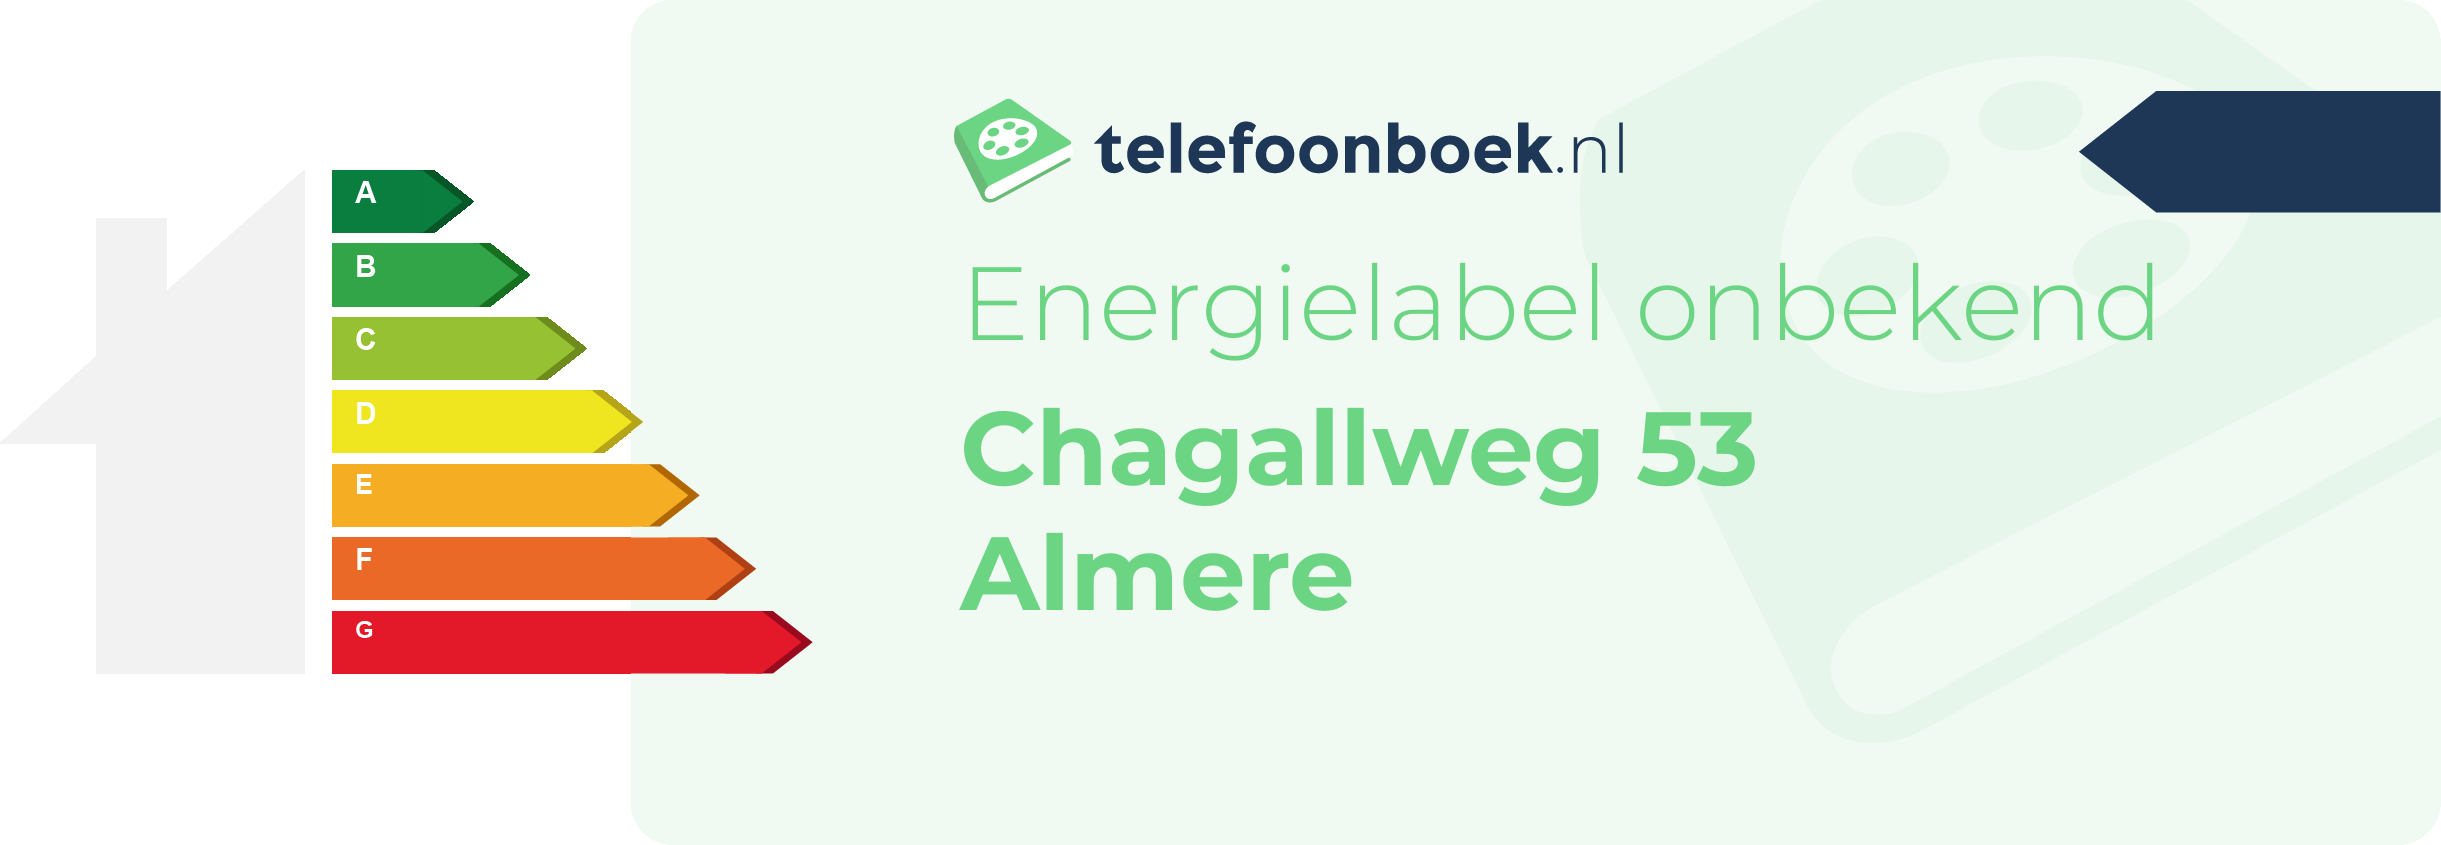 Energielabel Chagallweg 53 Almere